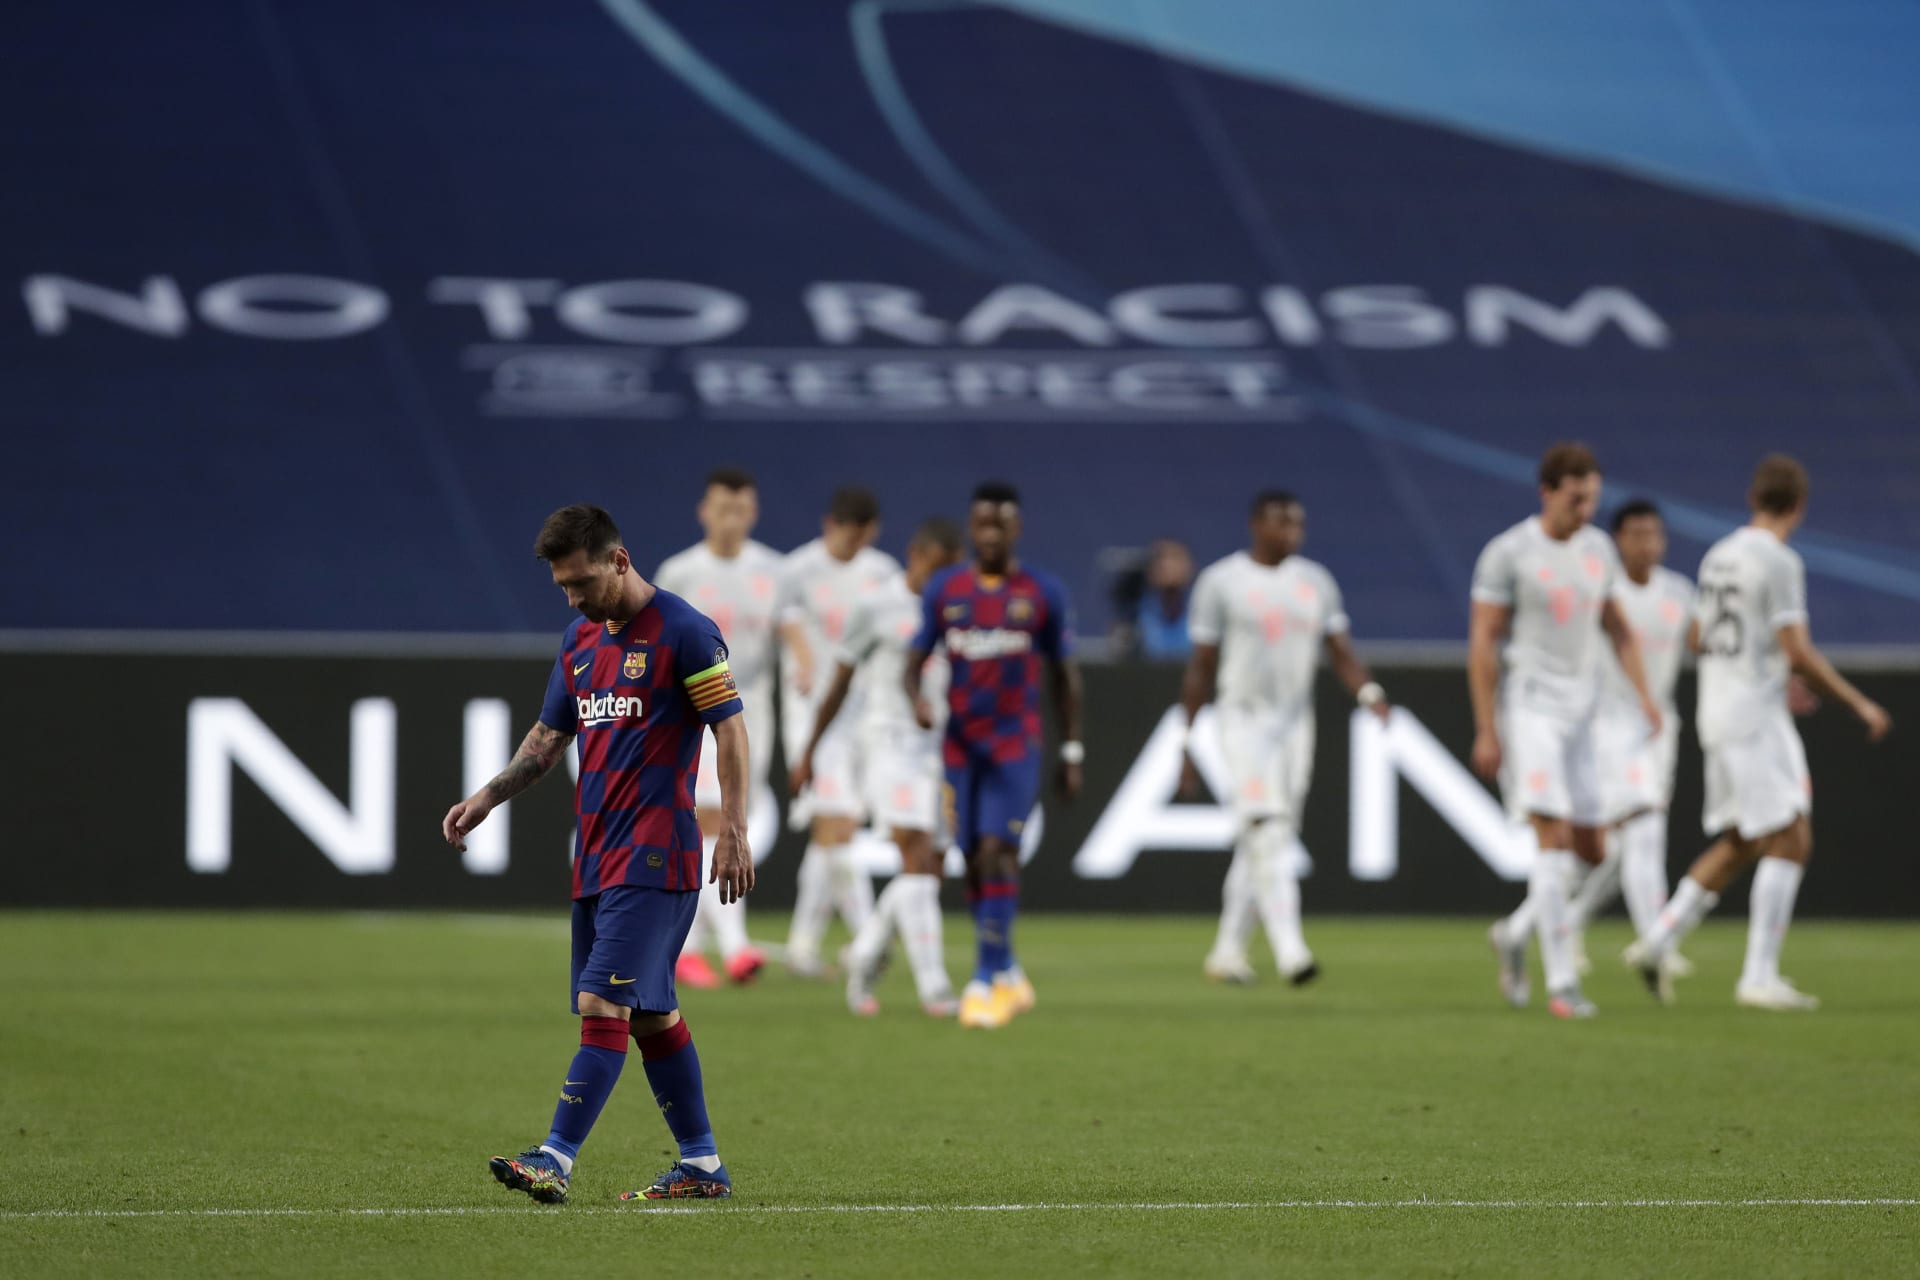 هزيمة ثقيلة لبرشلونة على يد بايرن ميونخ بدوري أبطال أوروبا.. ورئيس النادي: "كارثة"